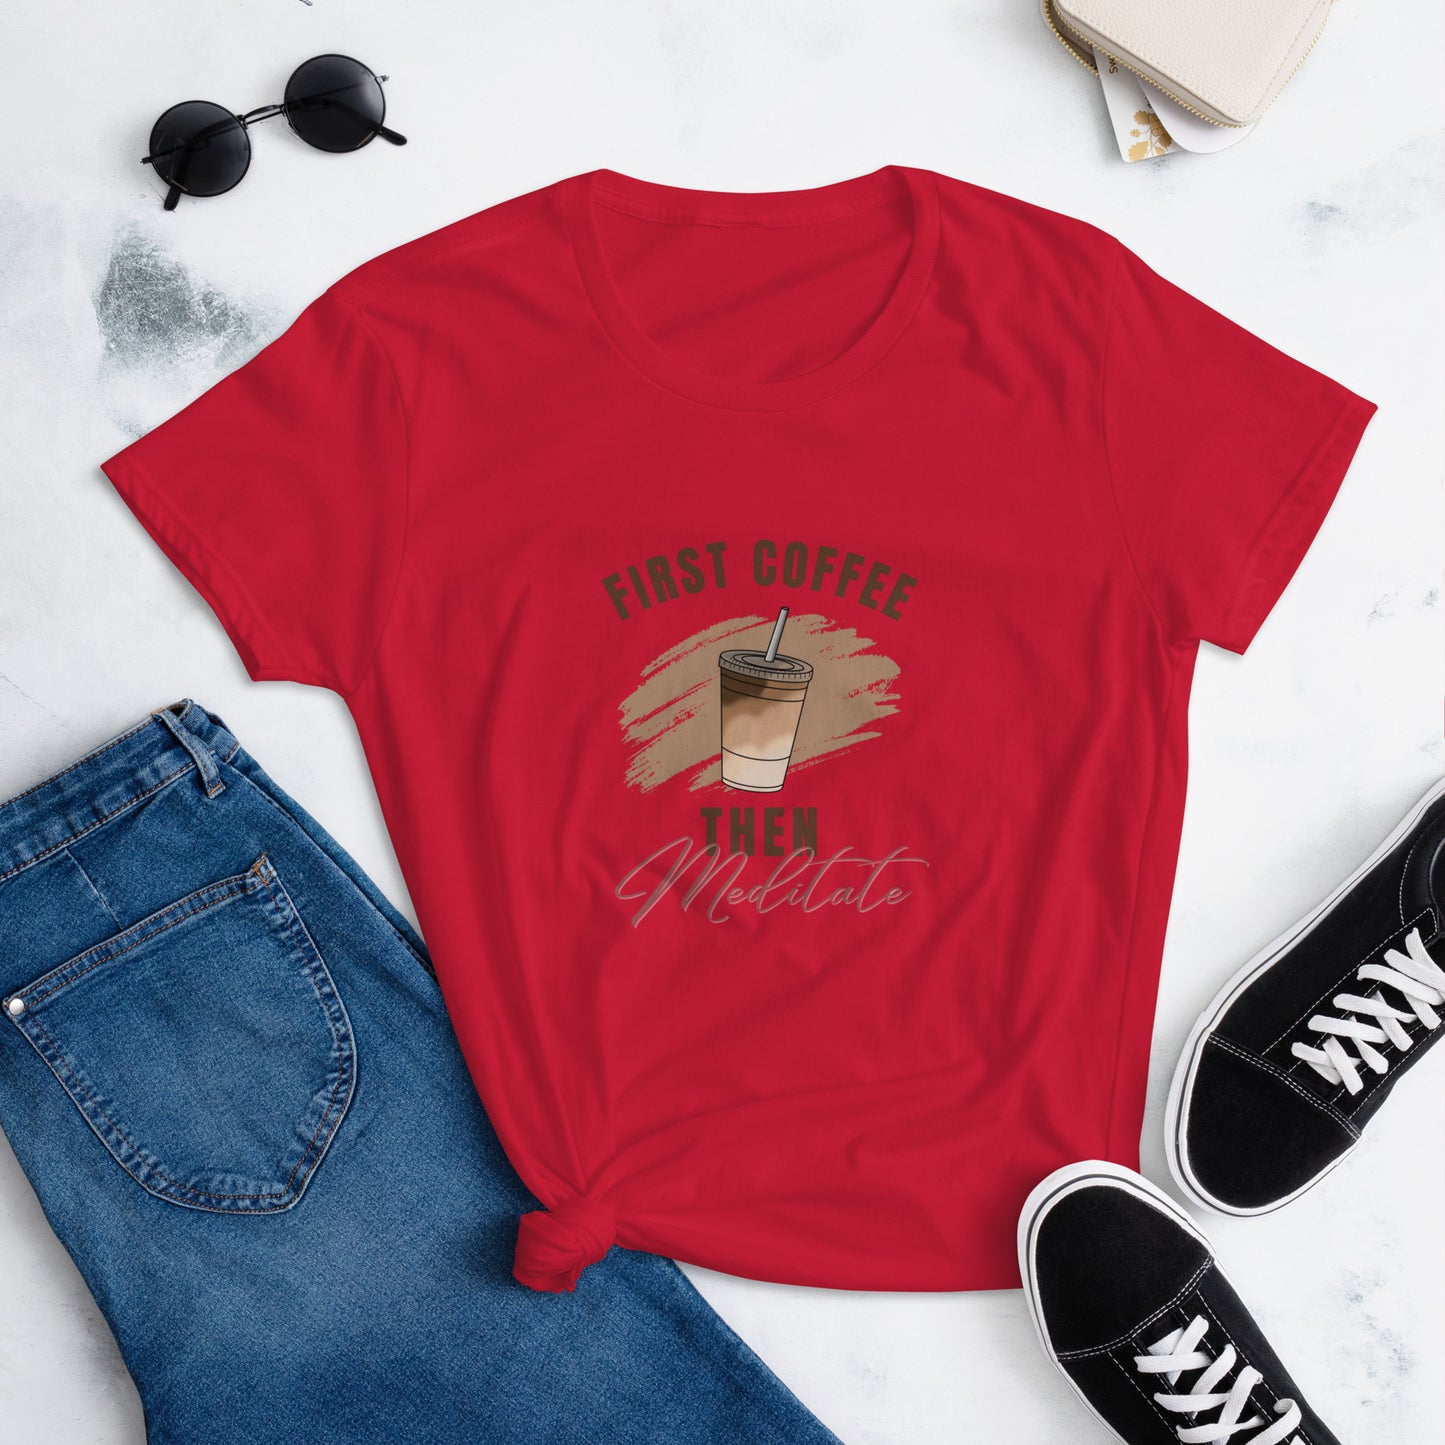 "First Coffee Then Meditate" Women's short sleeve t-shirt